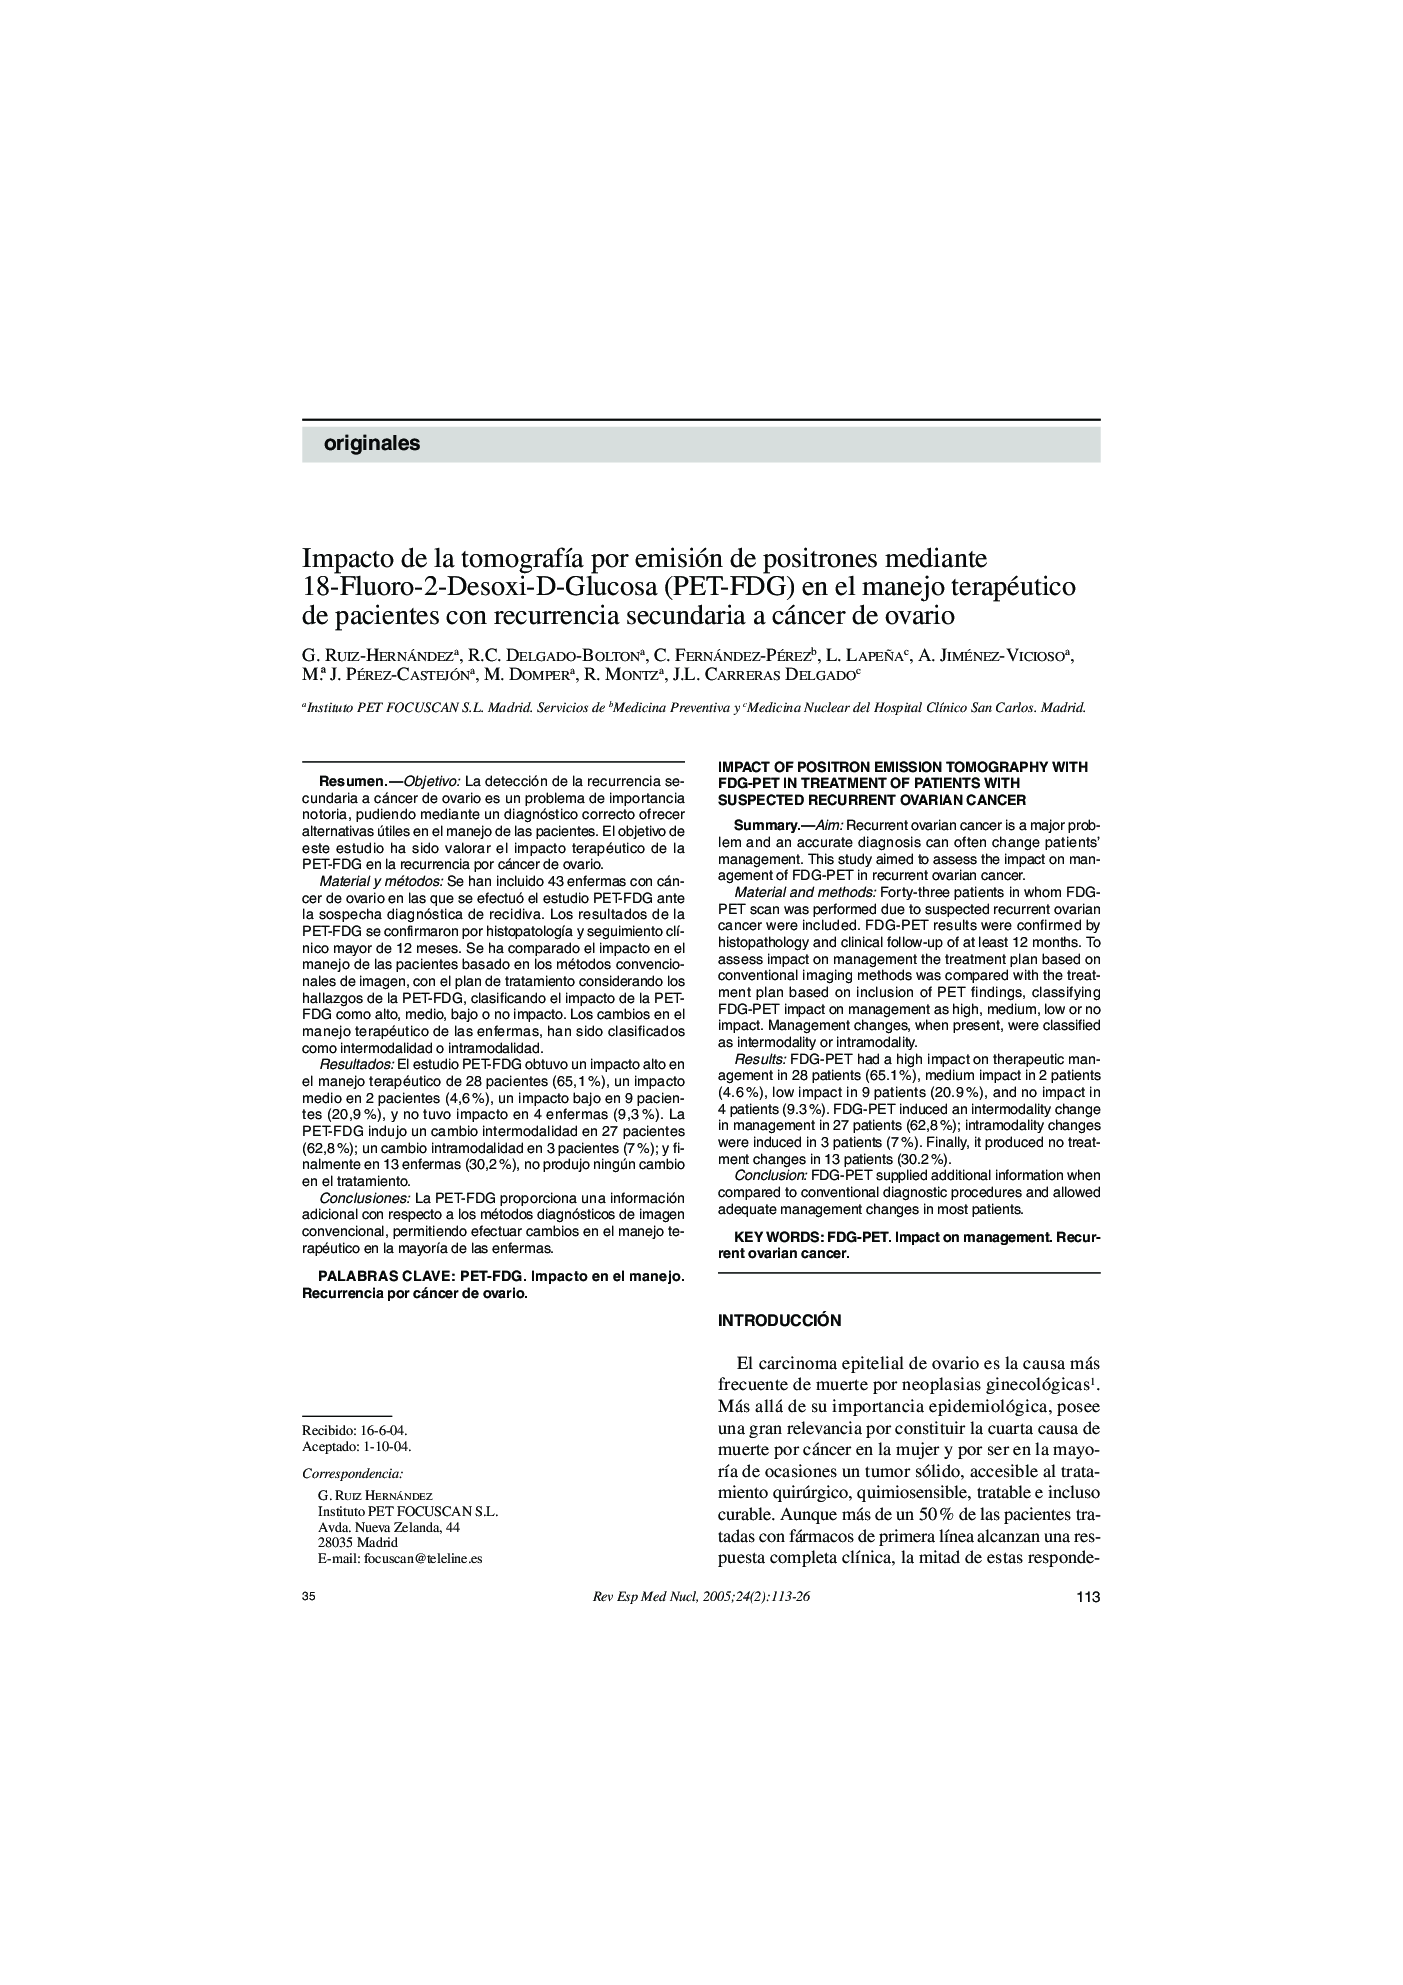 Impacto de la tomografÃ­a por emisión de positrones mediante 18-Fluoro-2-Desoxi-D-Glucosa (PET-FDG) en el manejo terapéutico de pacientes con recurrencia secundaria a cáncer de ovario